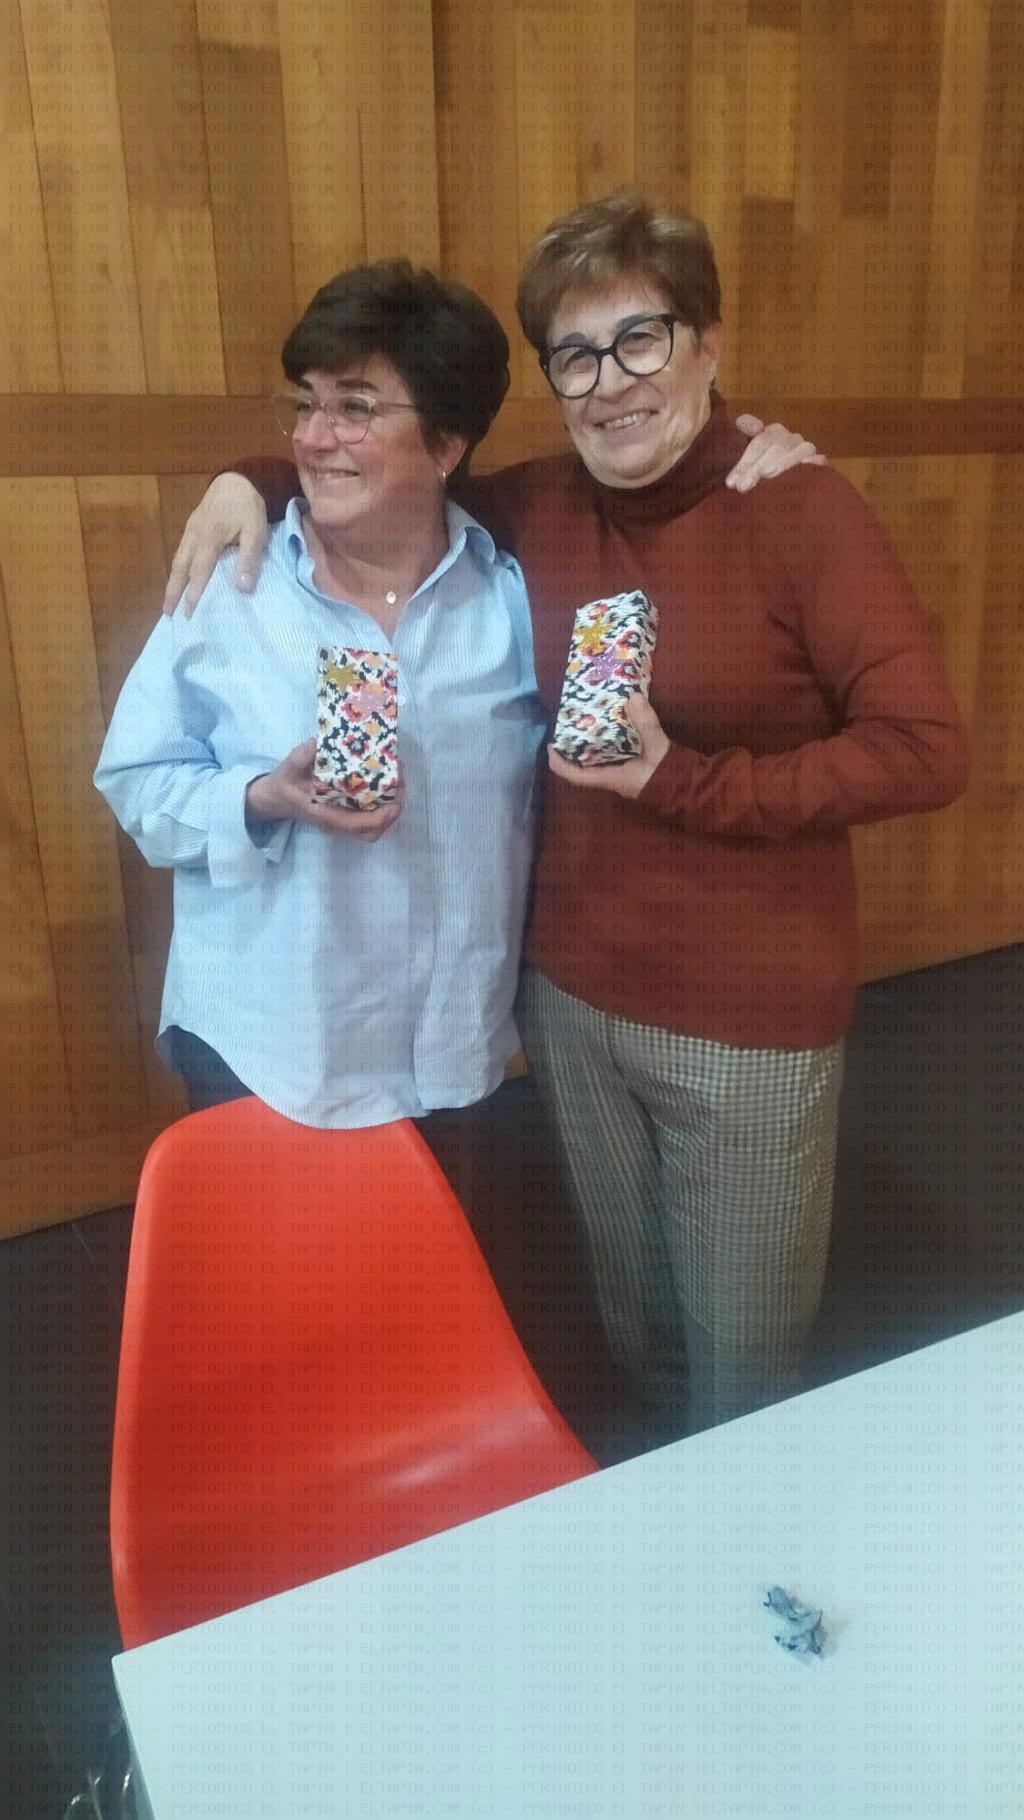 El Tapin - Victoria y Toñi ganaron el campeonato de Parchís organizado por la Asociación de Jubilados de Valdesoto 